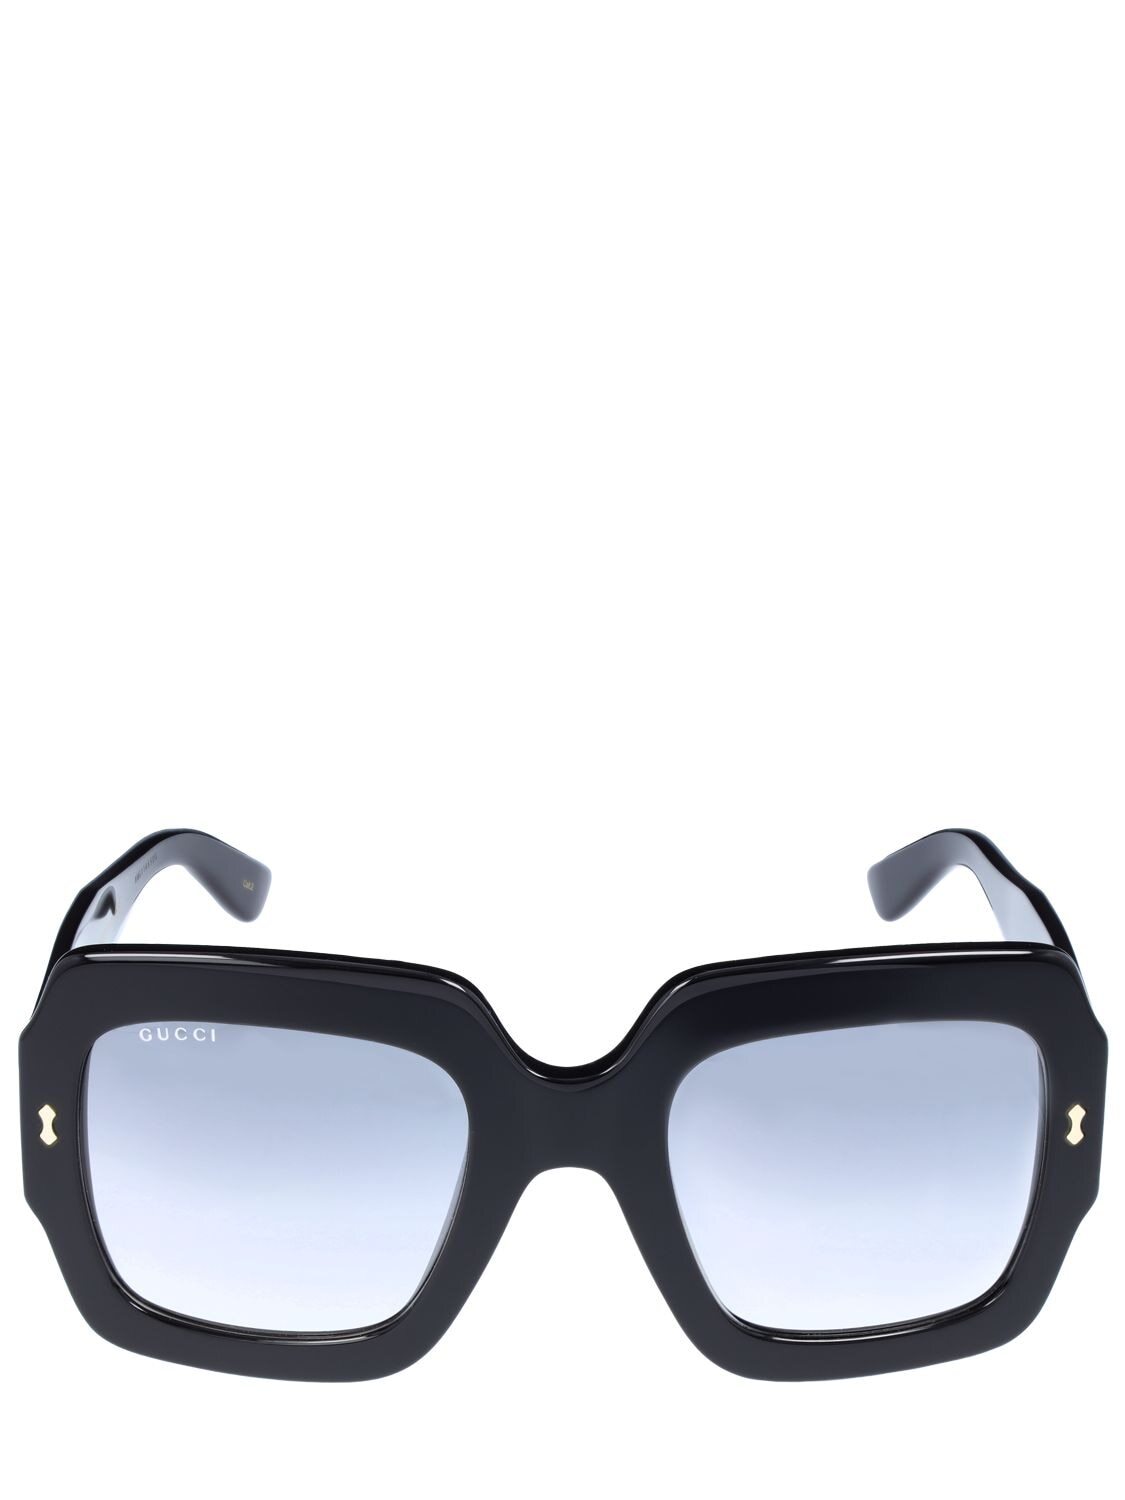 GUCCI Sustainability Square Acetate Sunglasses in black / grey